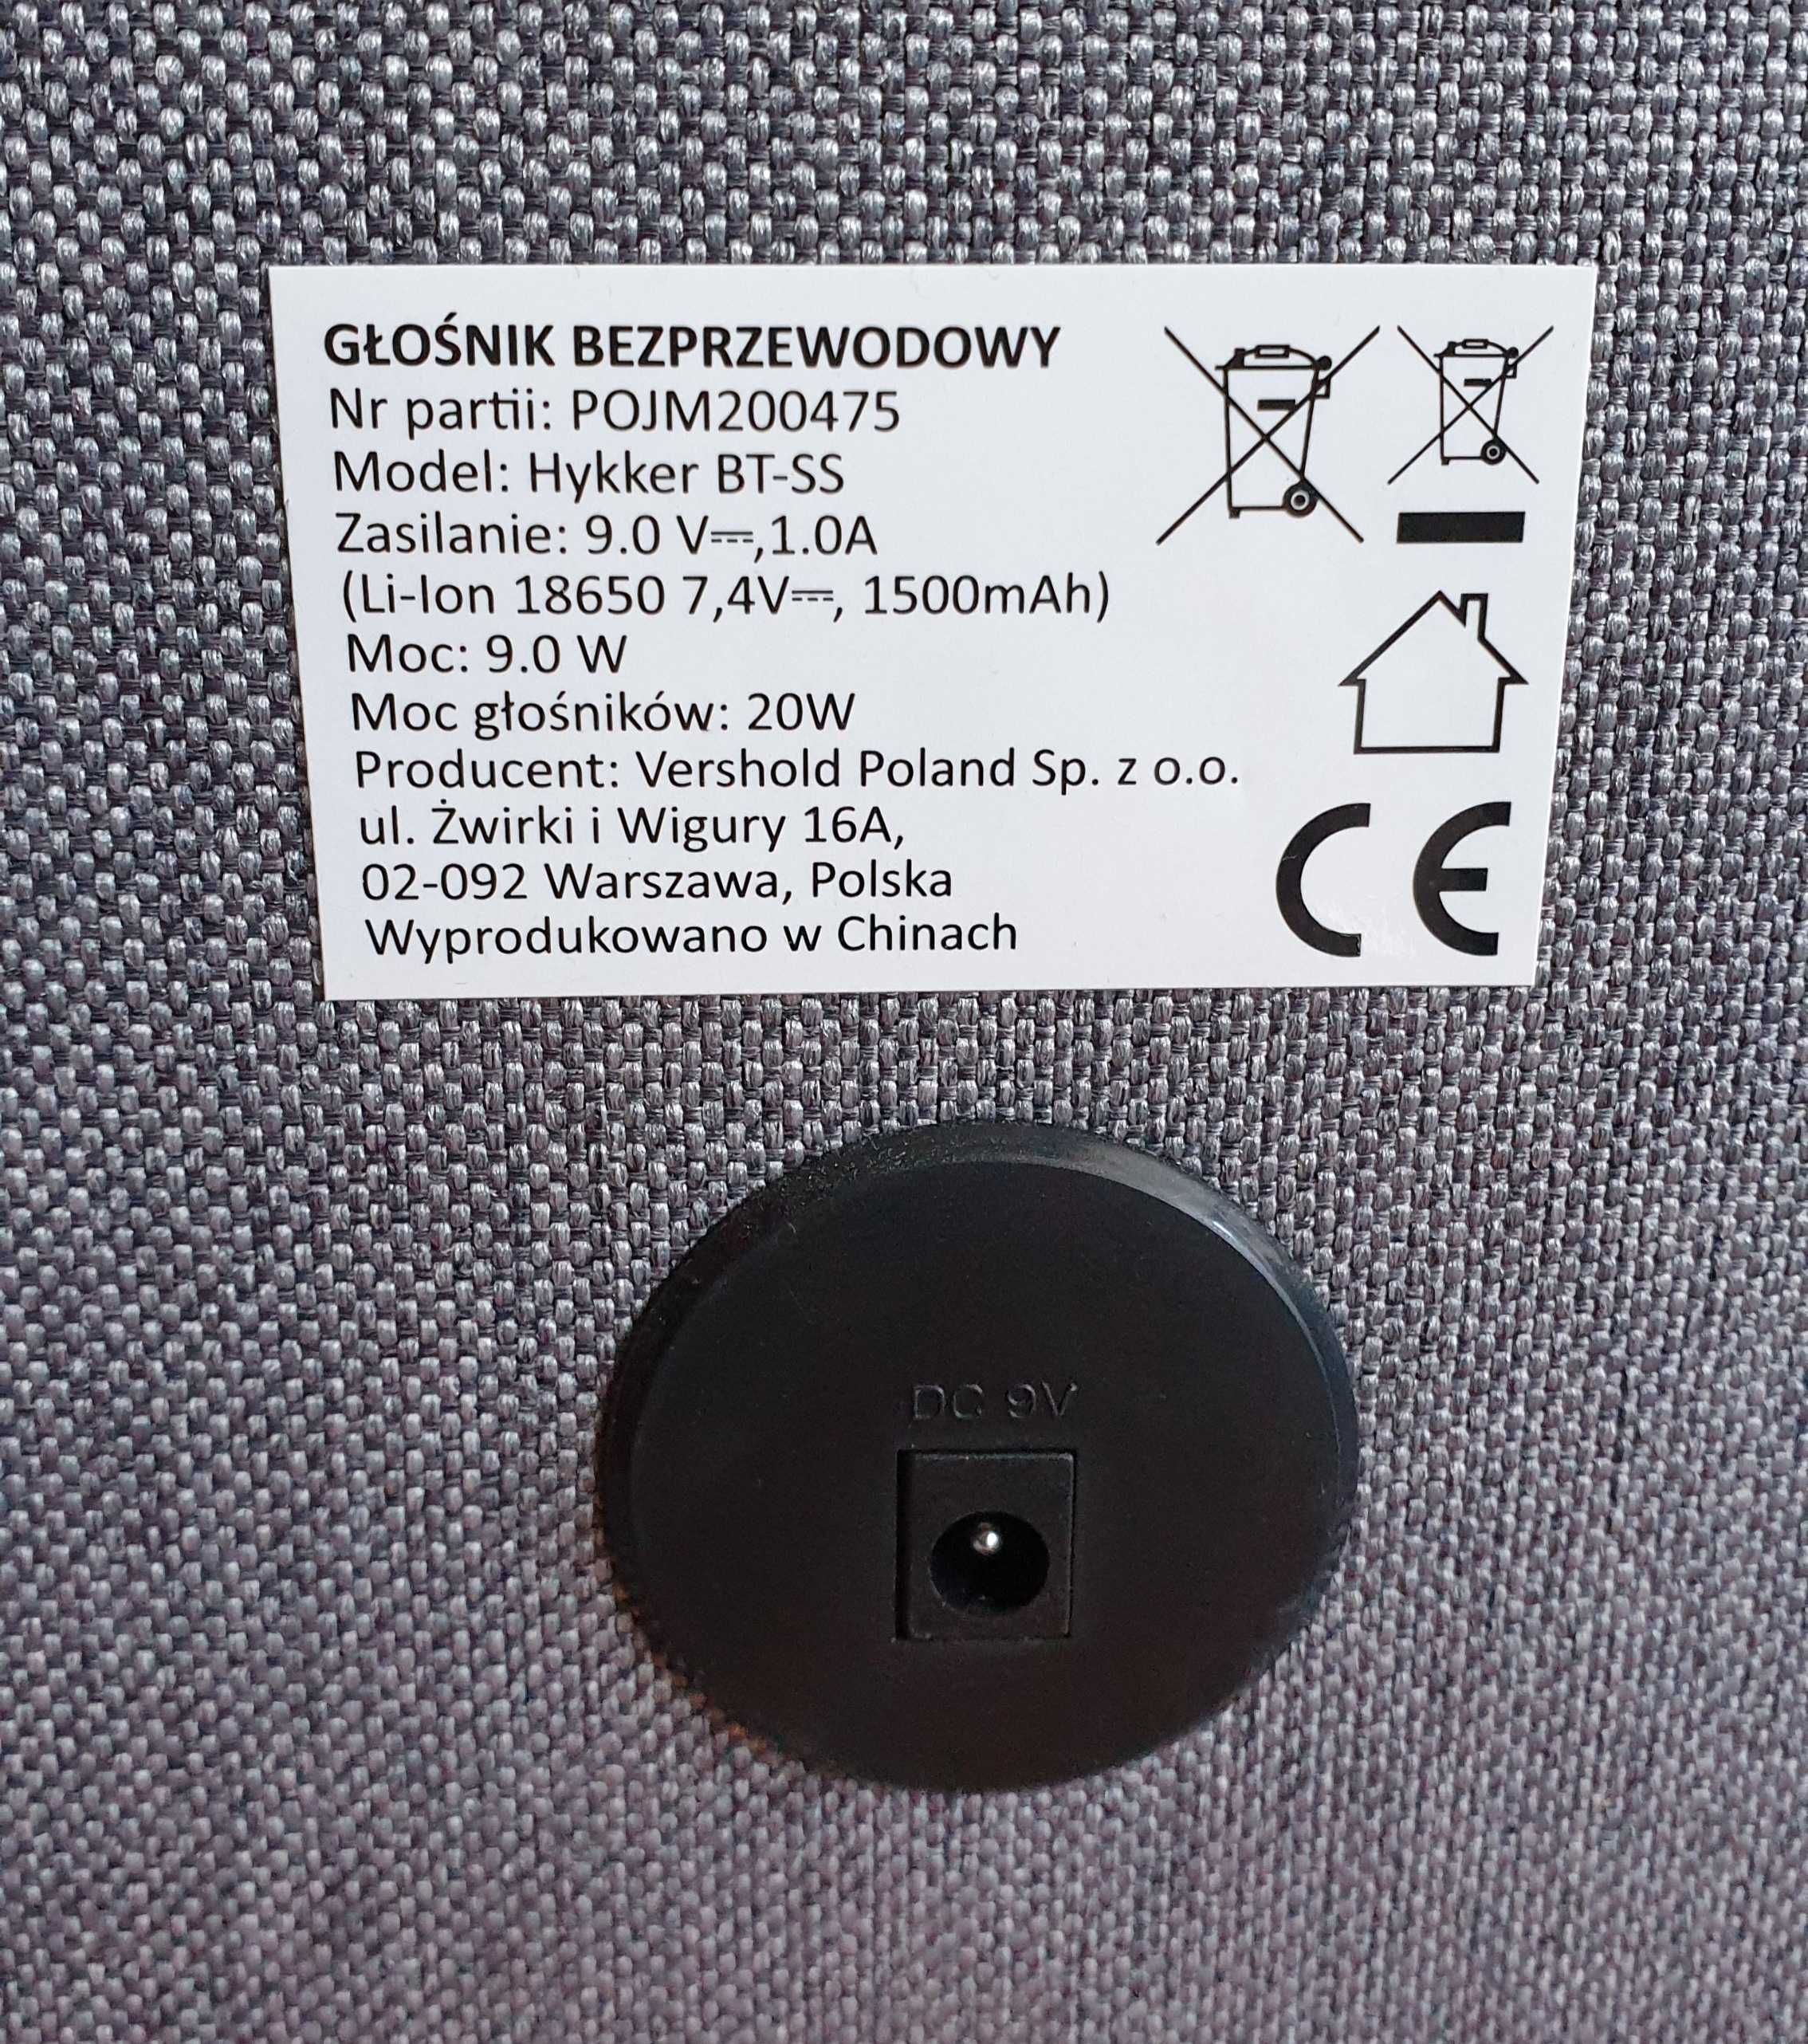 HYKKER BT-TS - głośnik bezprzewodowy bluetooth - 20W - NOWY !!!